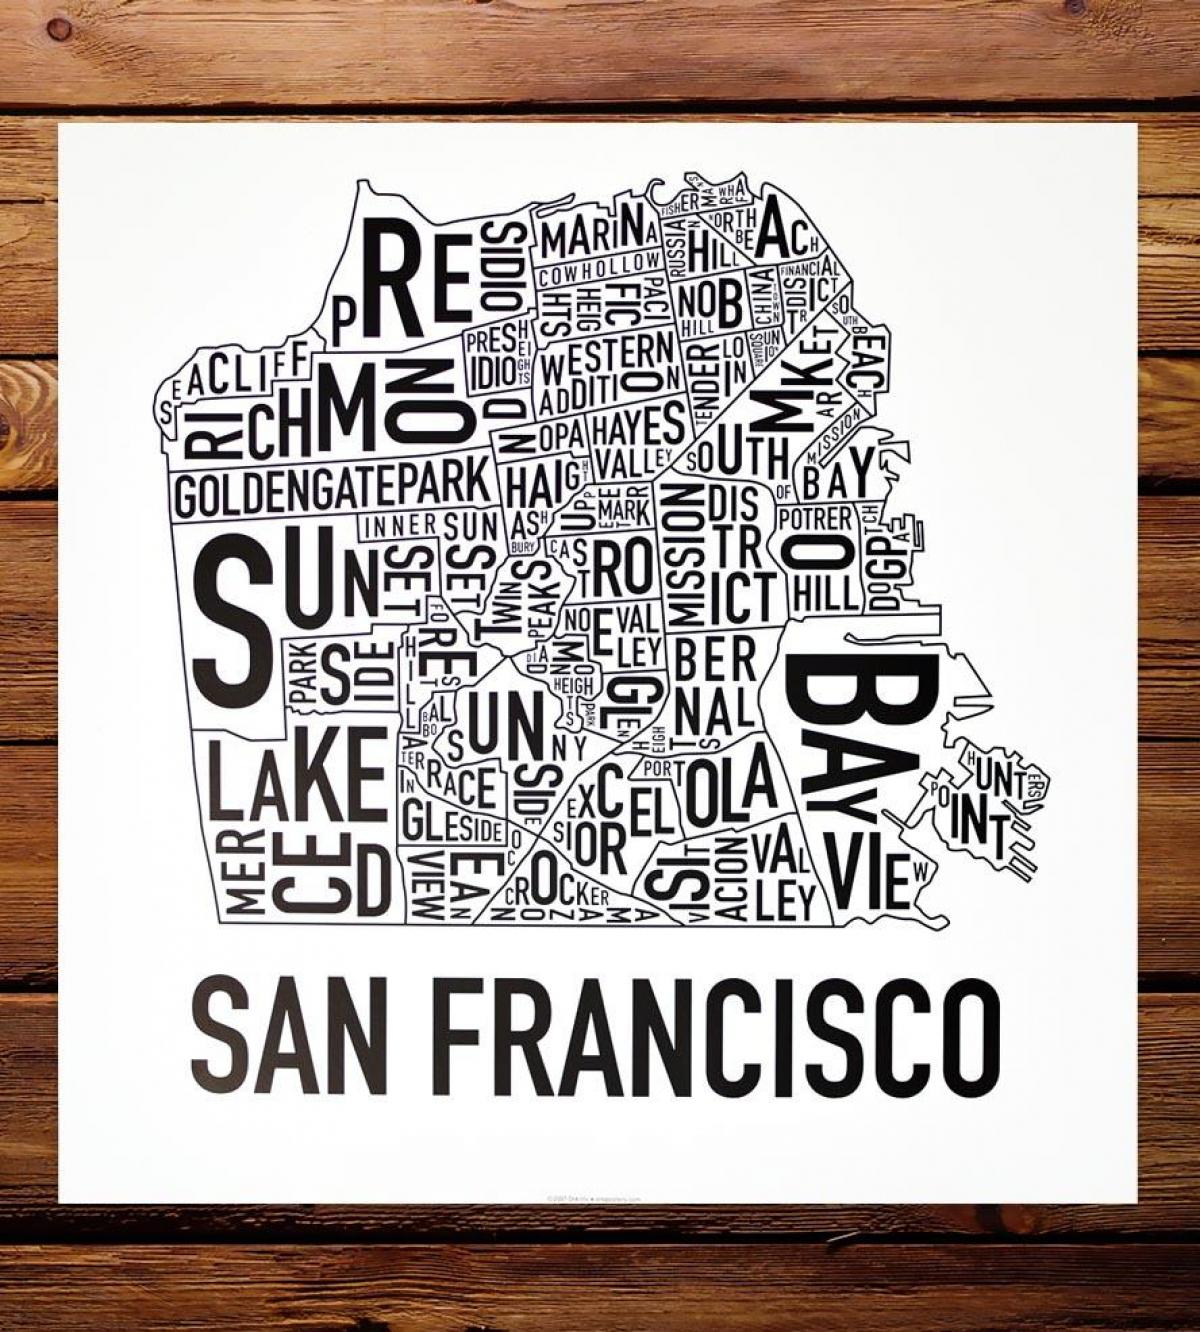 Zemljevid San Francisco z okolico umetnosti